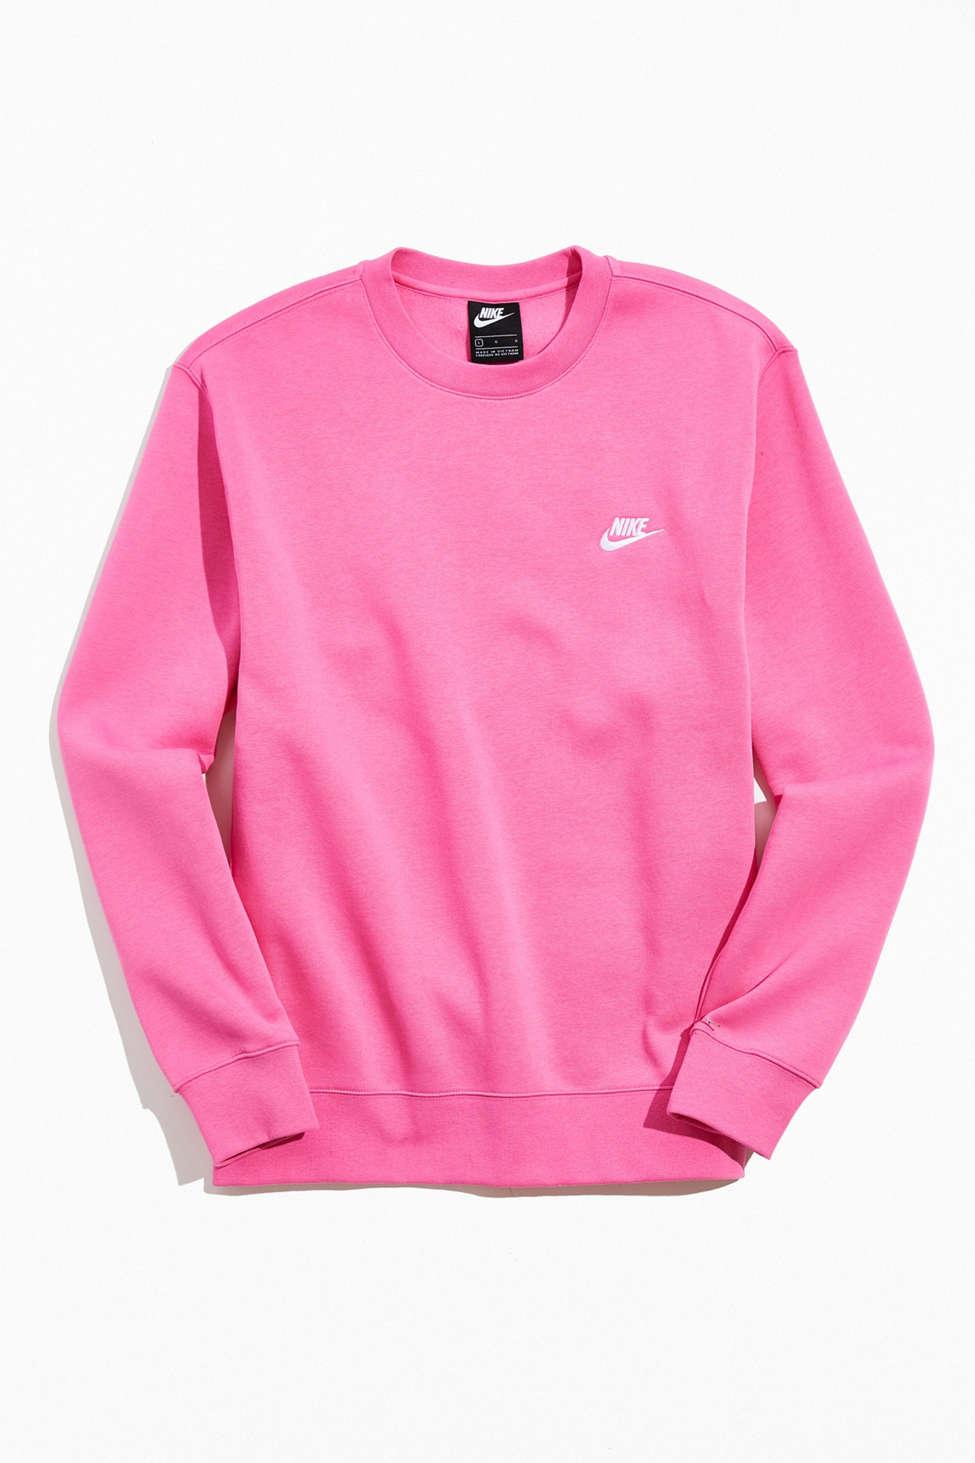 Nike Sportswear Club Fleece Crew Neck Sweatshirt in Pink for Men - Lyst